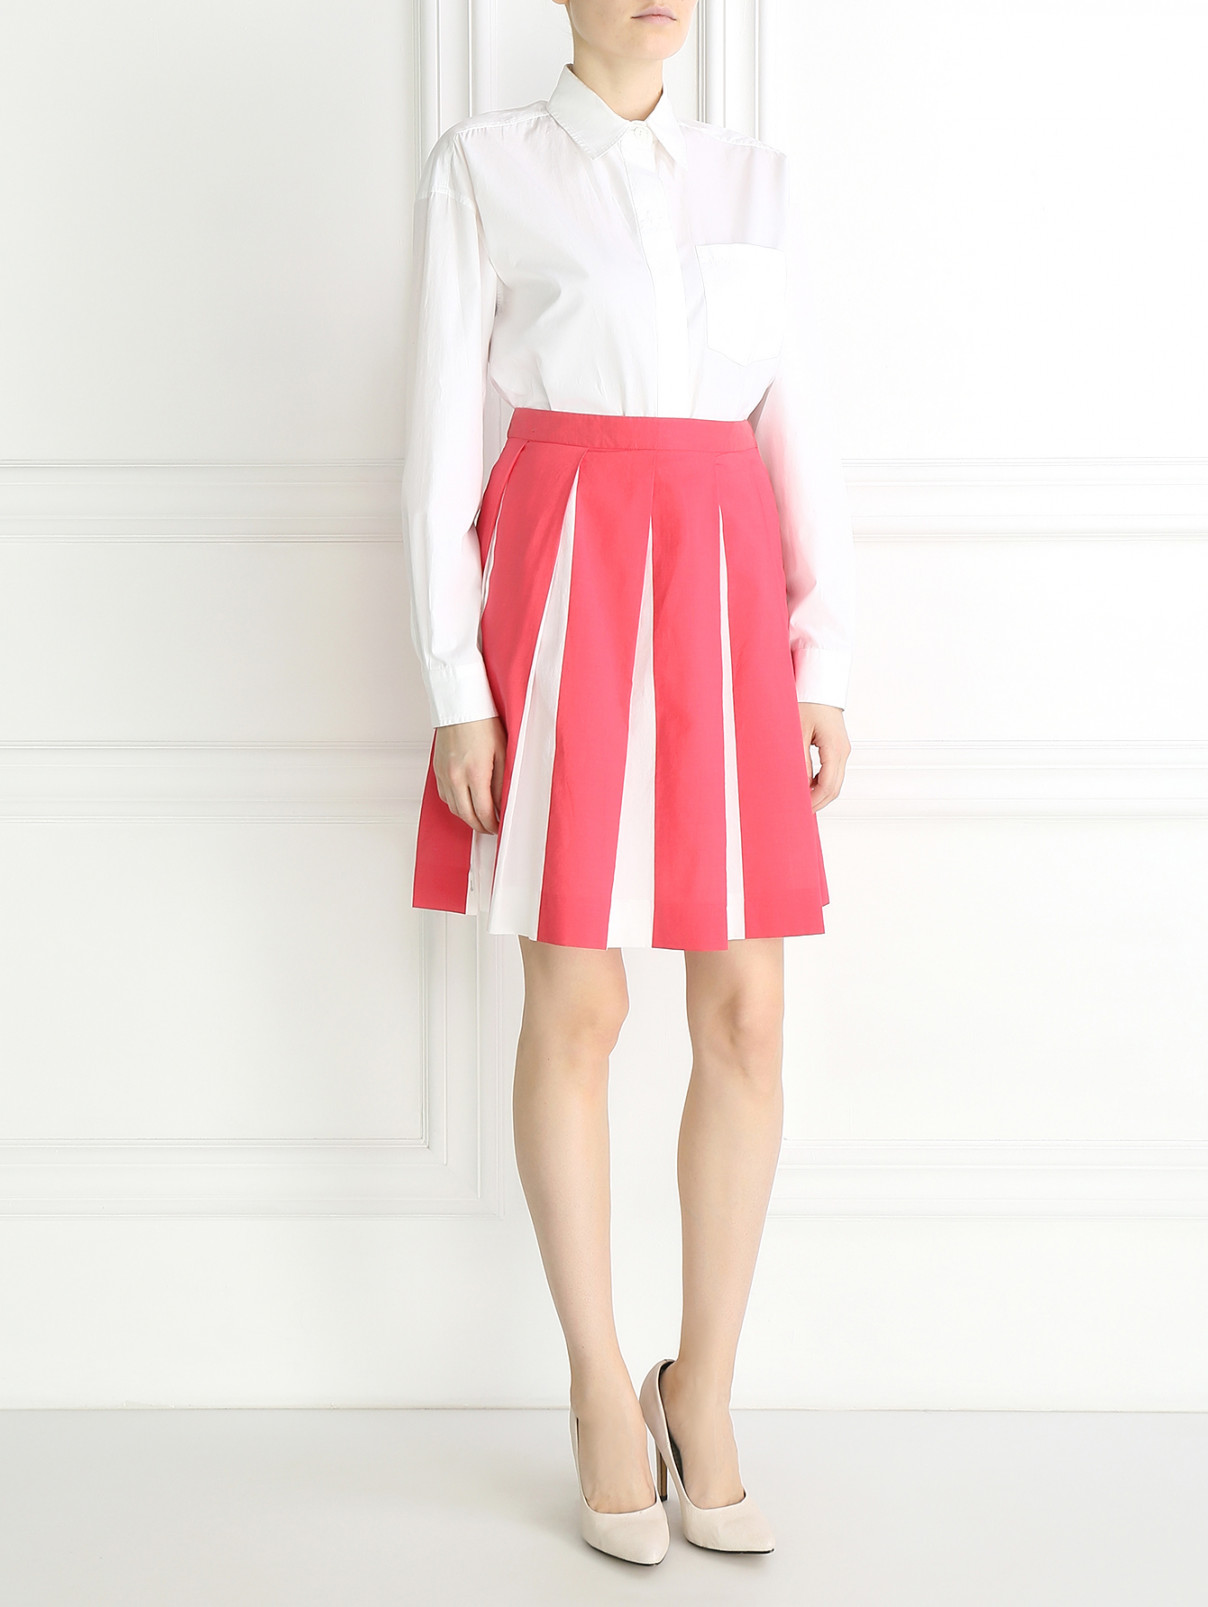 Плиссированная юбка-миди из хлопка и шелка Moschino  –  Модель Общий вид  – Цвет:  Розовый